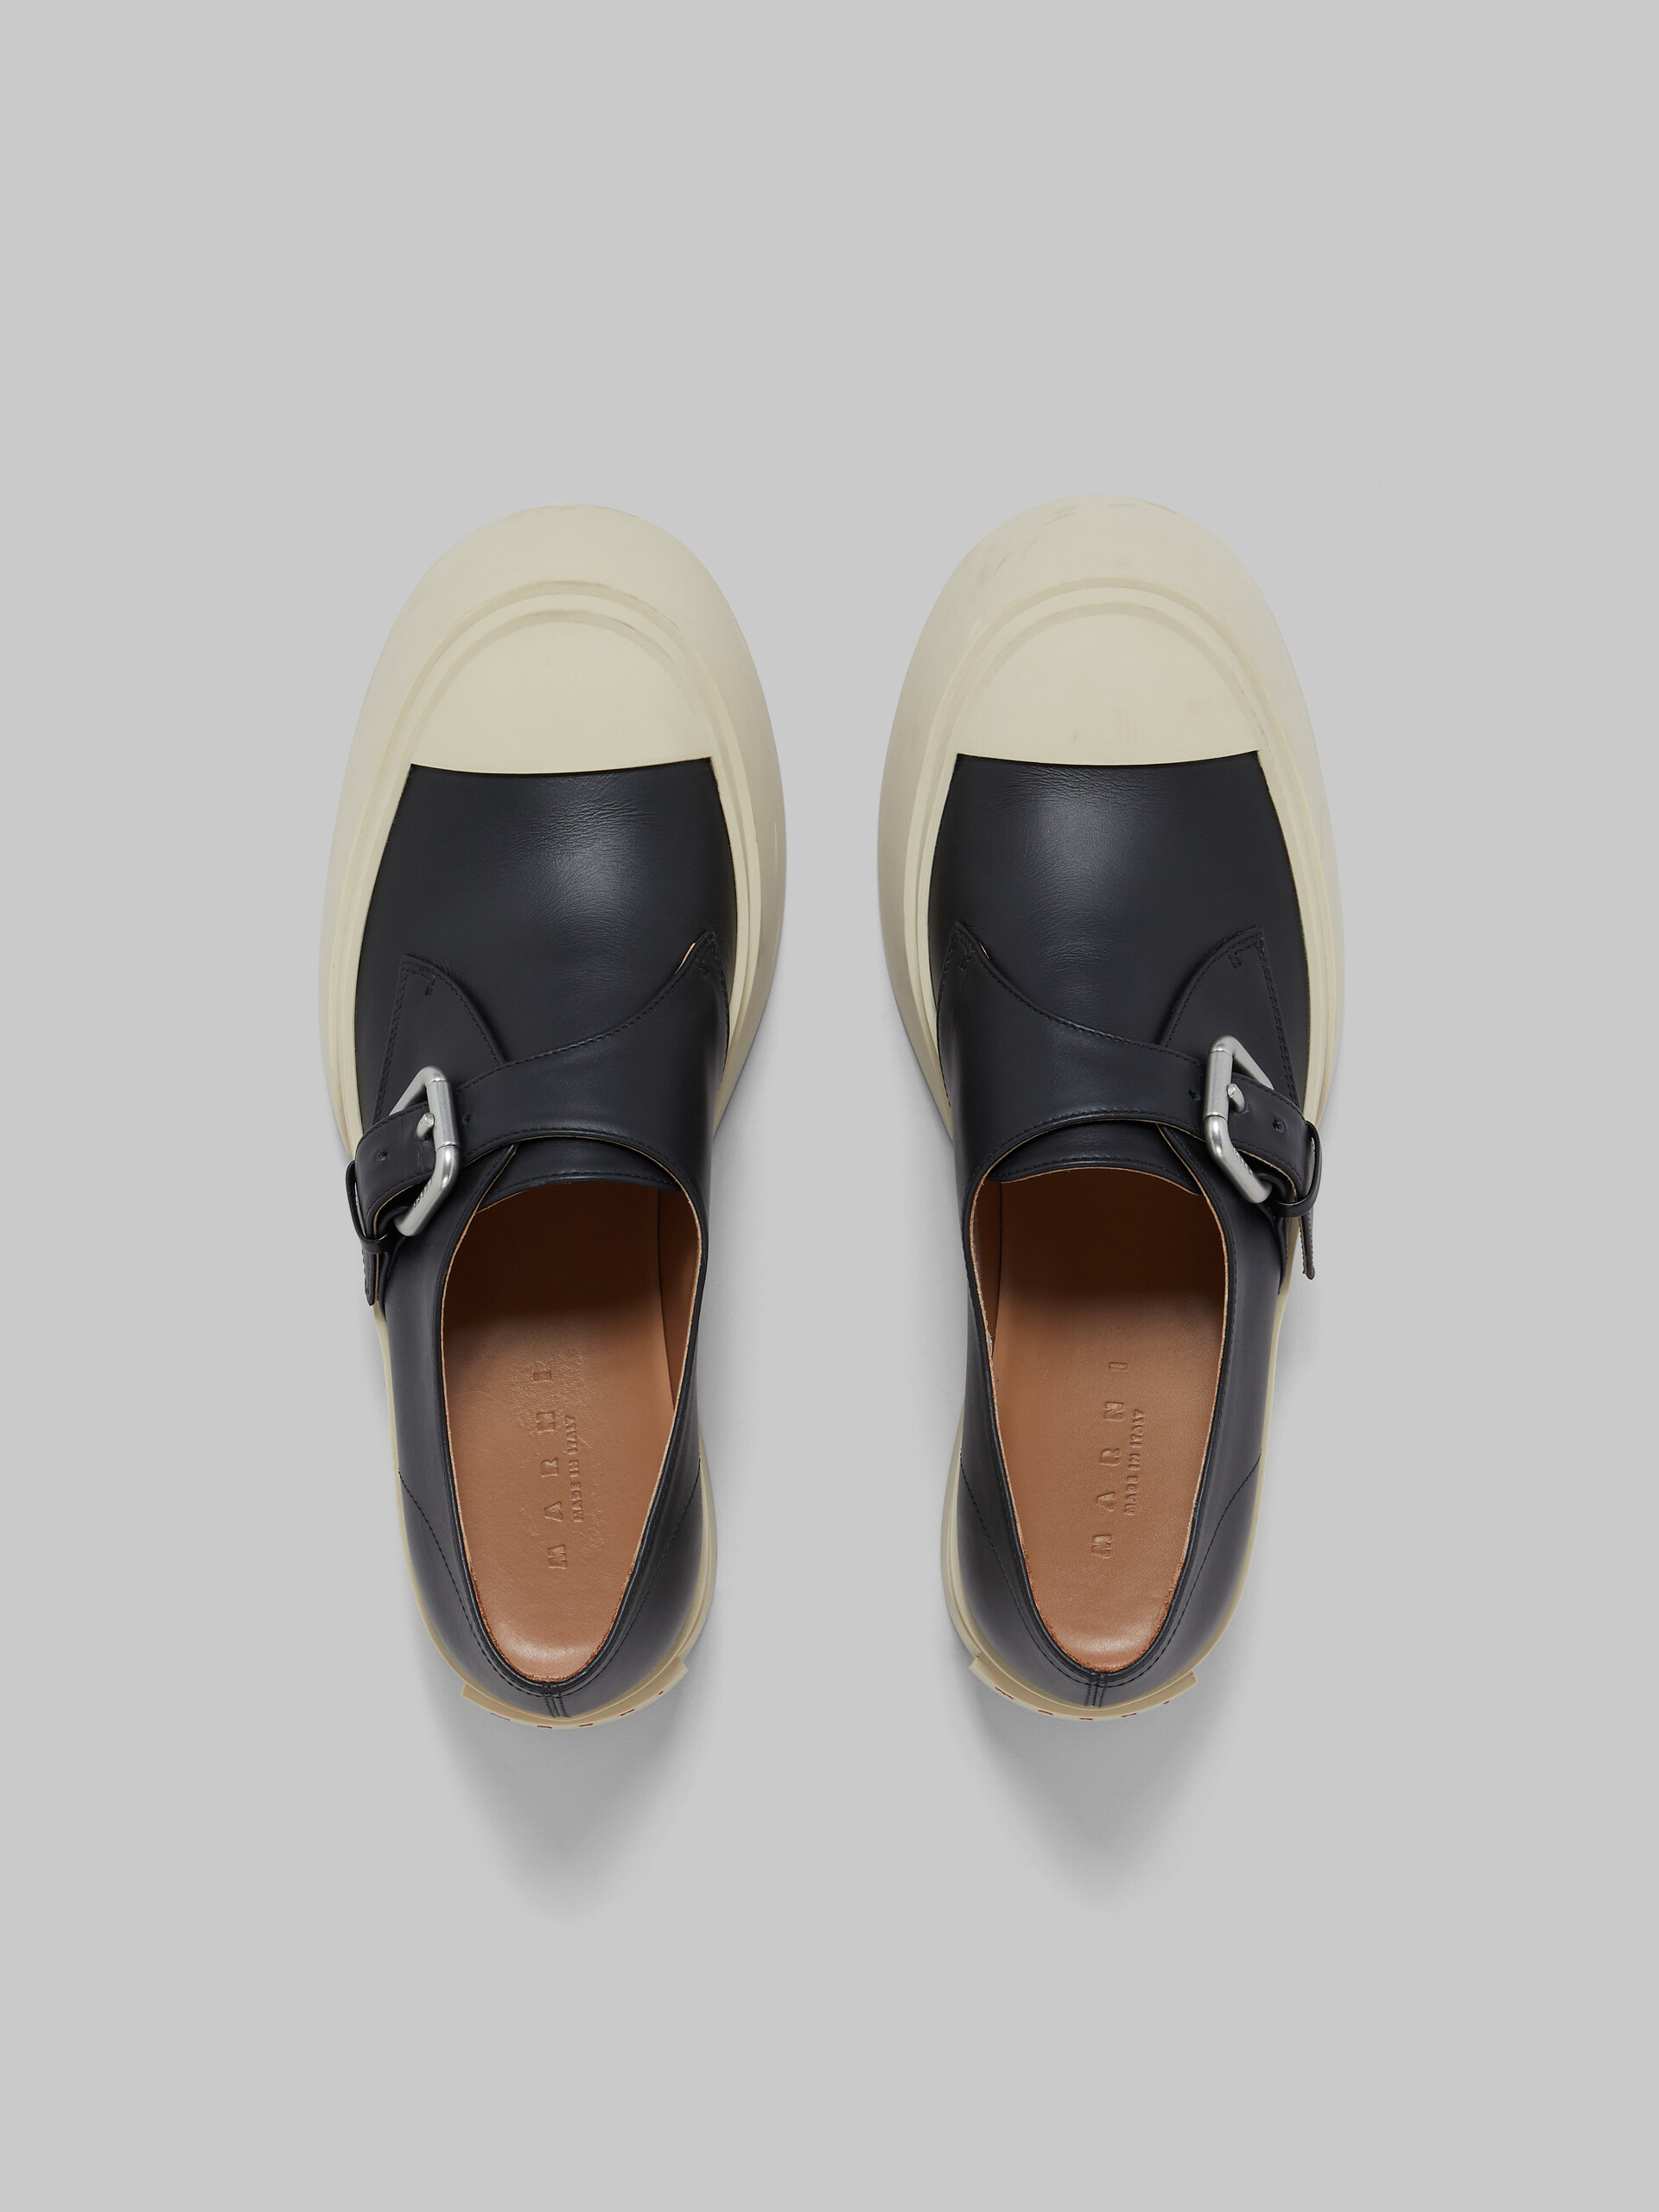 Sneaker Pablo in pelle nera con cinturino laterale - Sneakers - Image 4